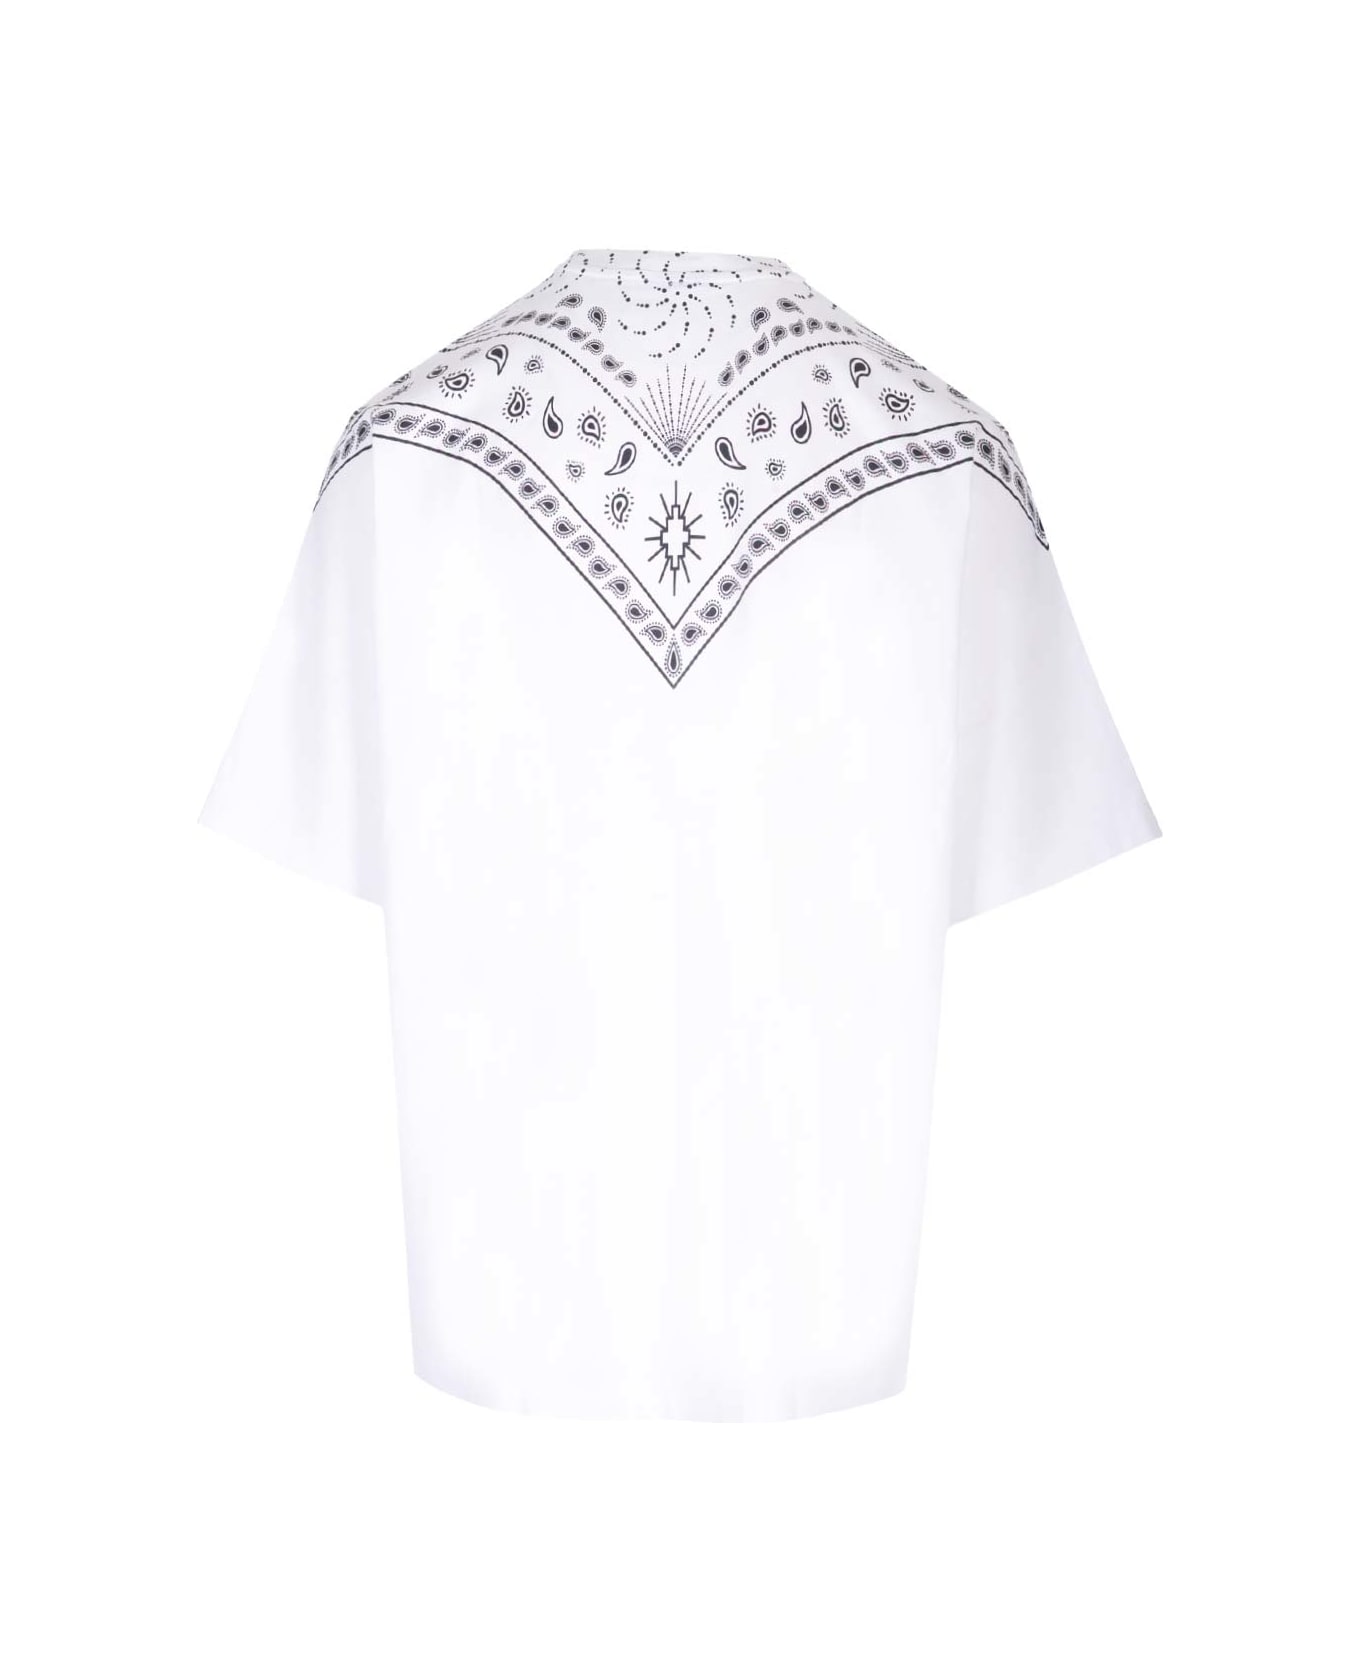 Marcelo Burlon Oversized T-shirt - White シャツ